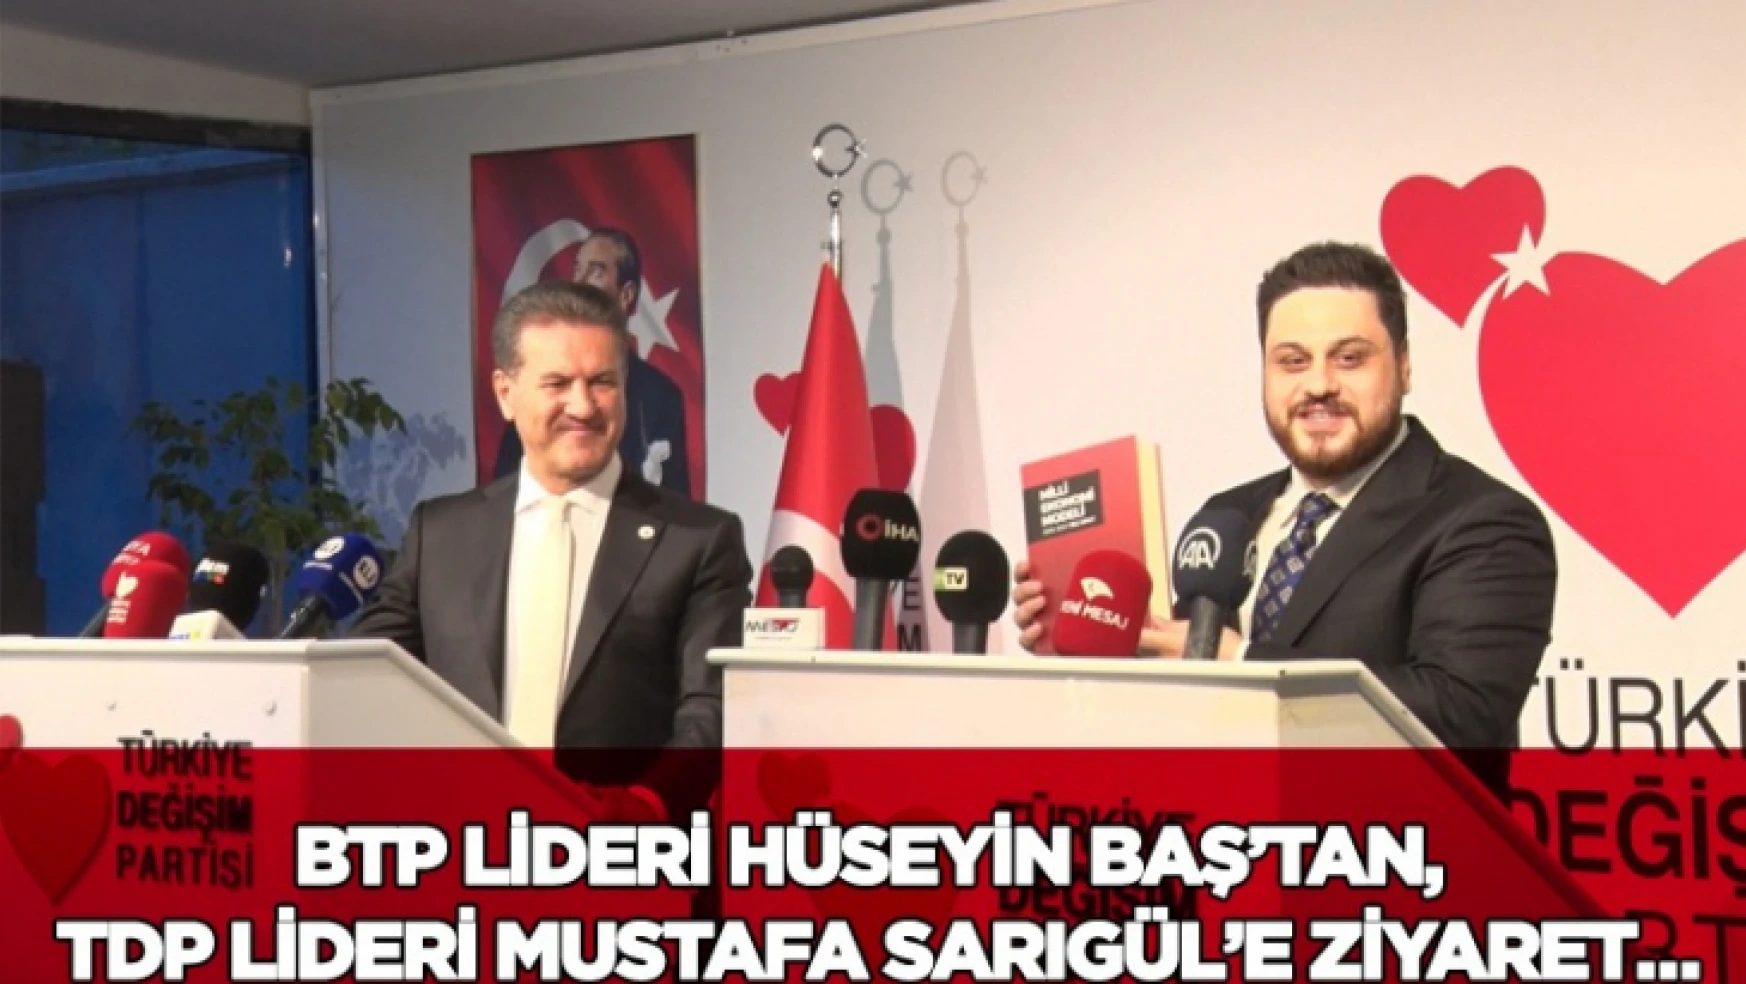 BTP Lideri Hüseyin Baş'tan, TDP Lideri Mustafa Sarıgül'e ziyaret